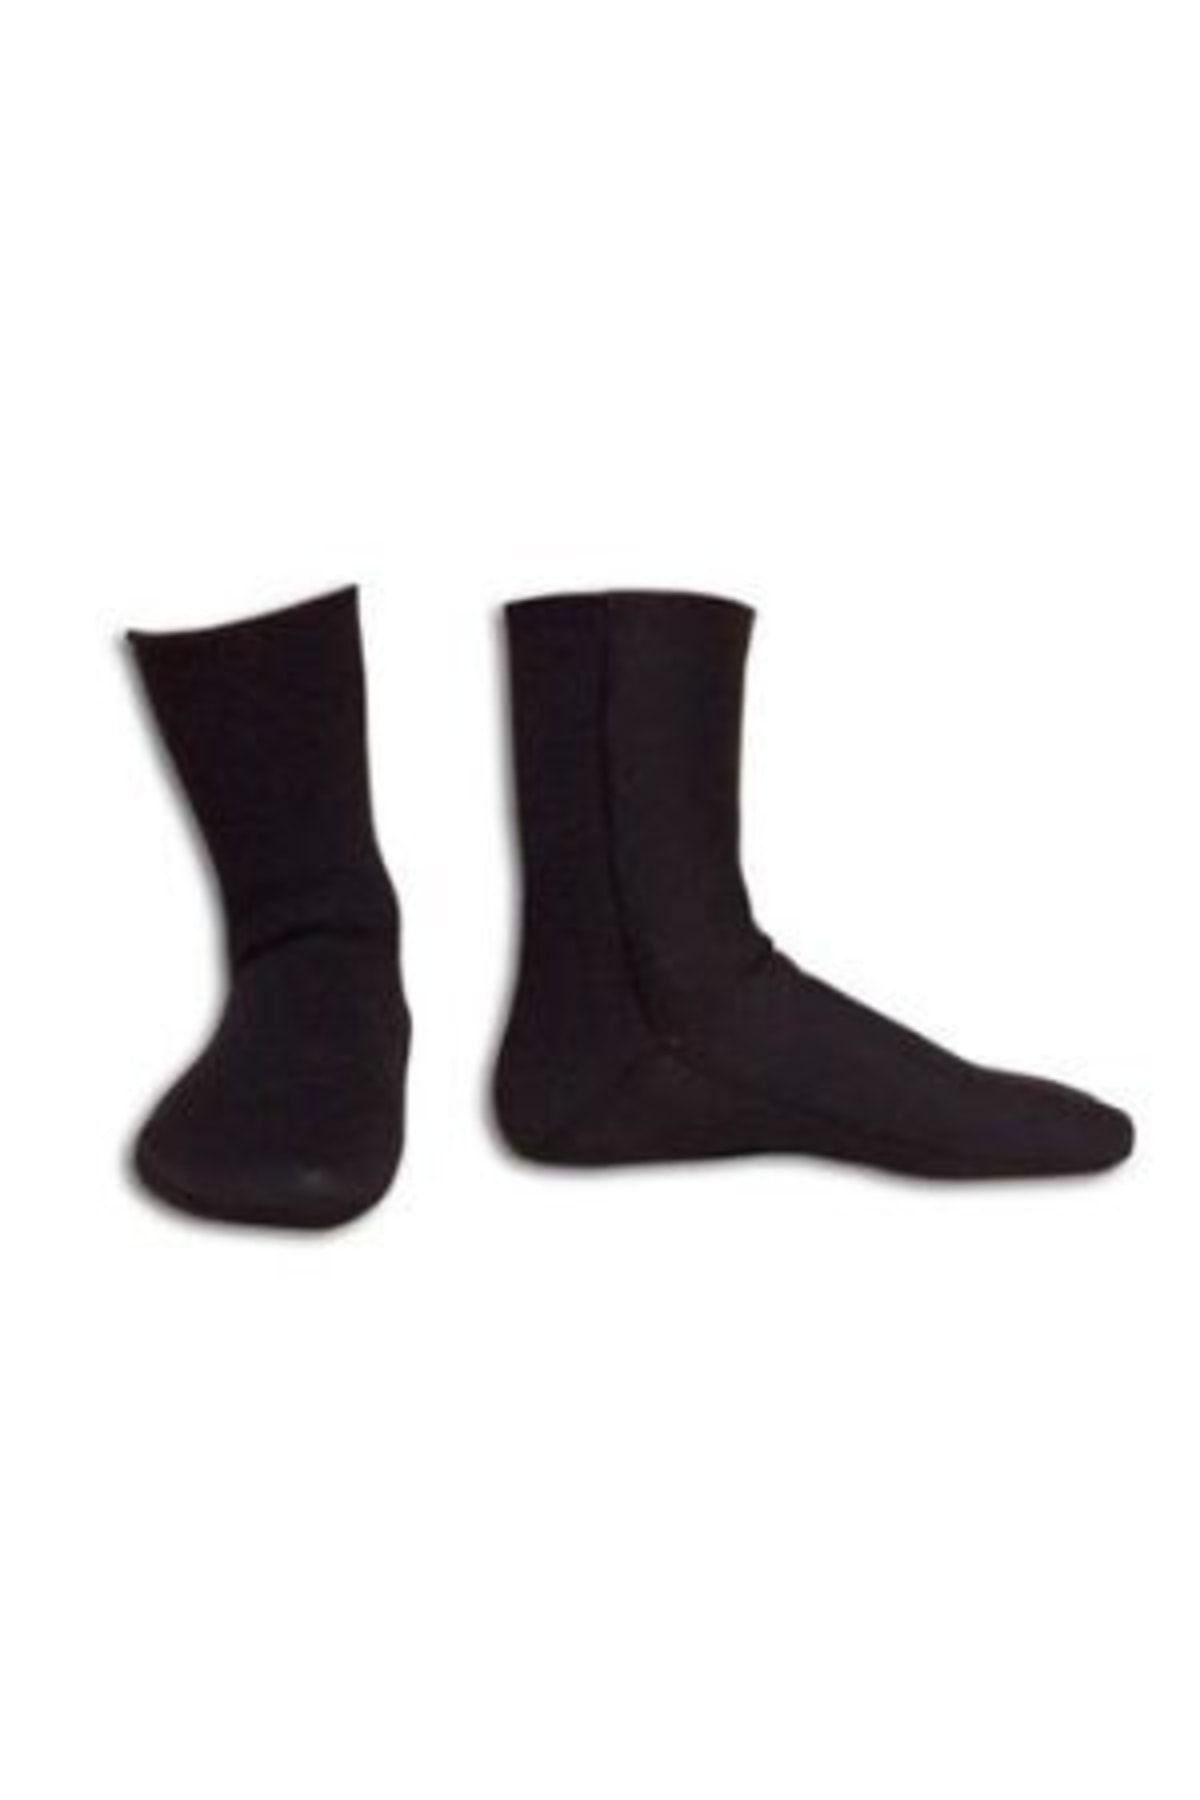 Apnea - 5 Mm Çorap Siyah Beden X Large